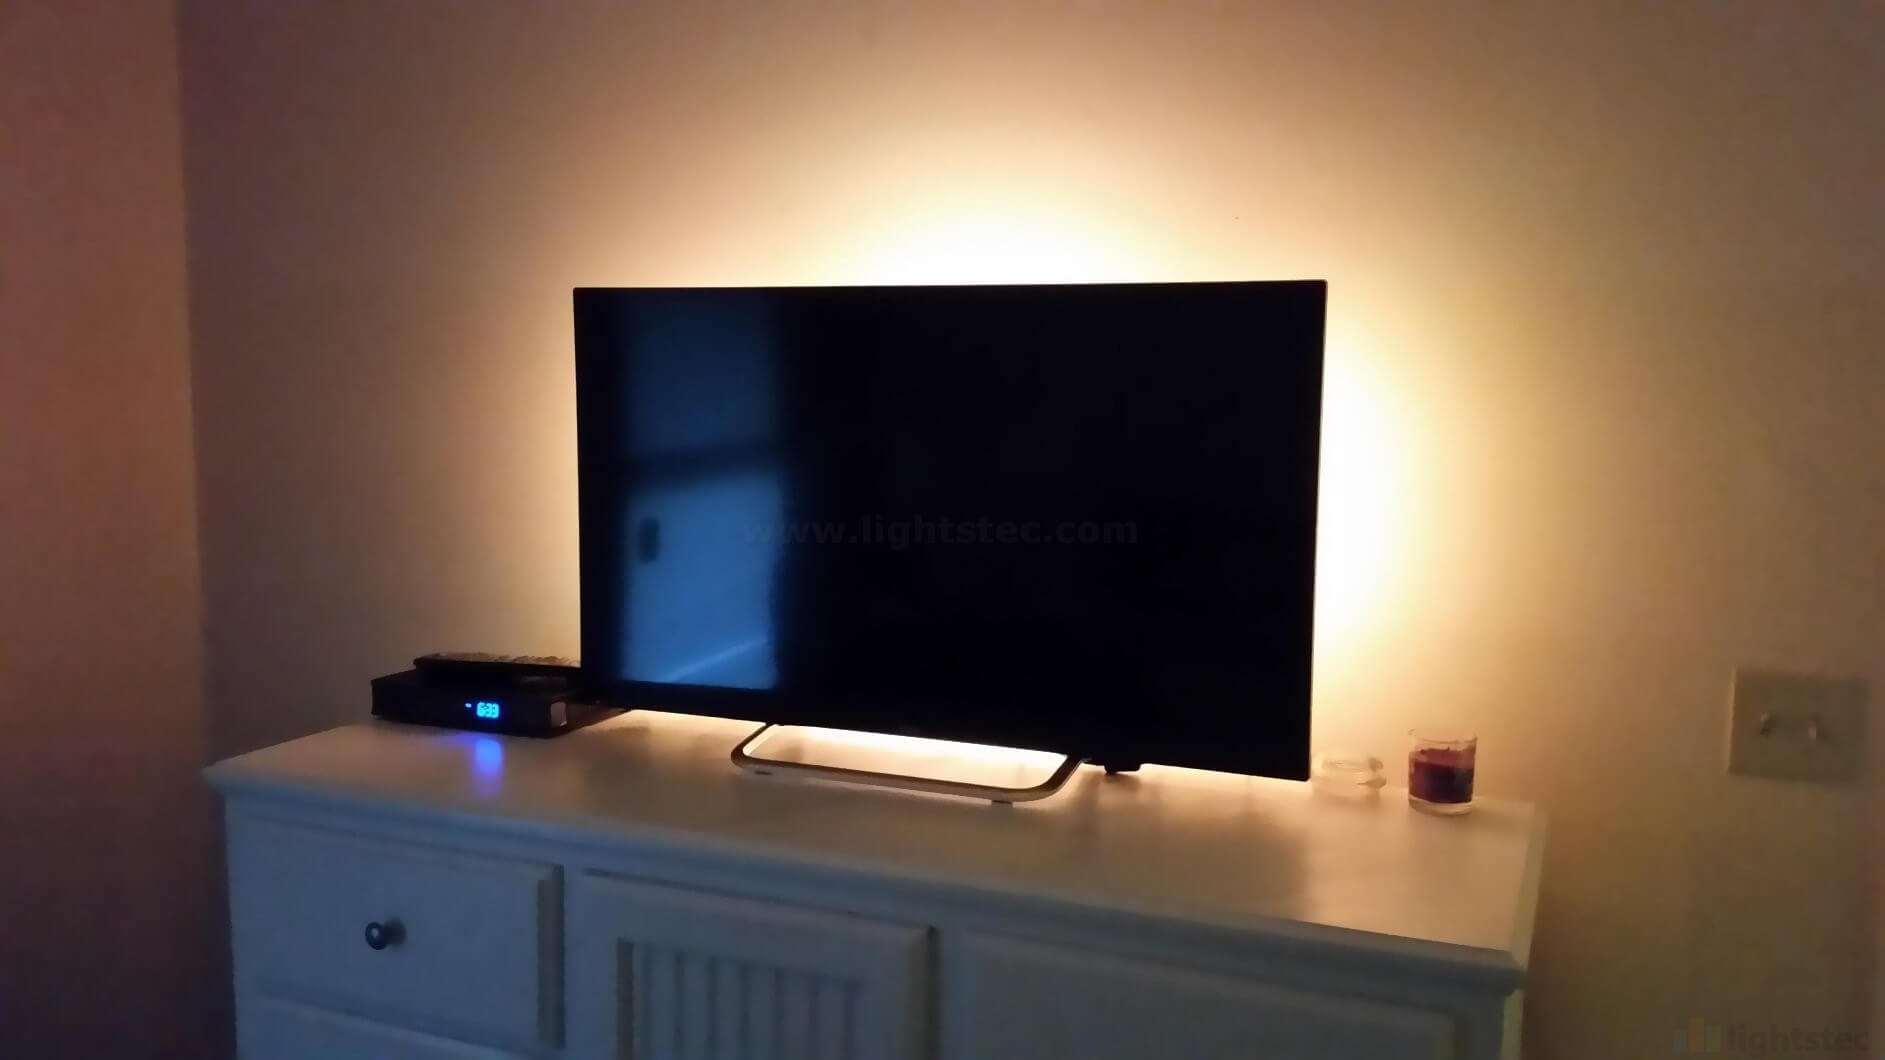 LED STRIP LIGHT FOR TV